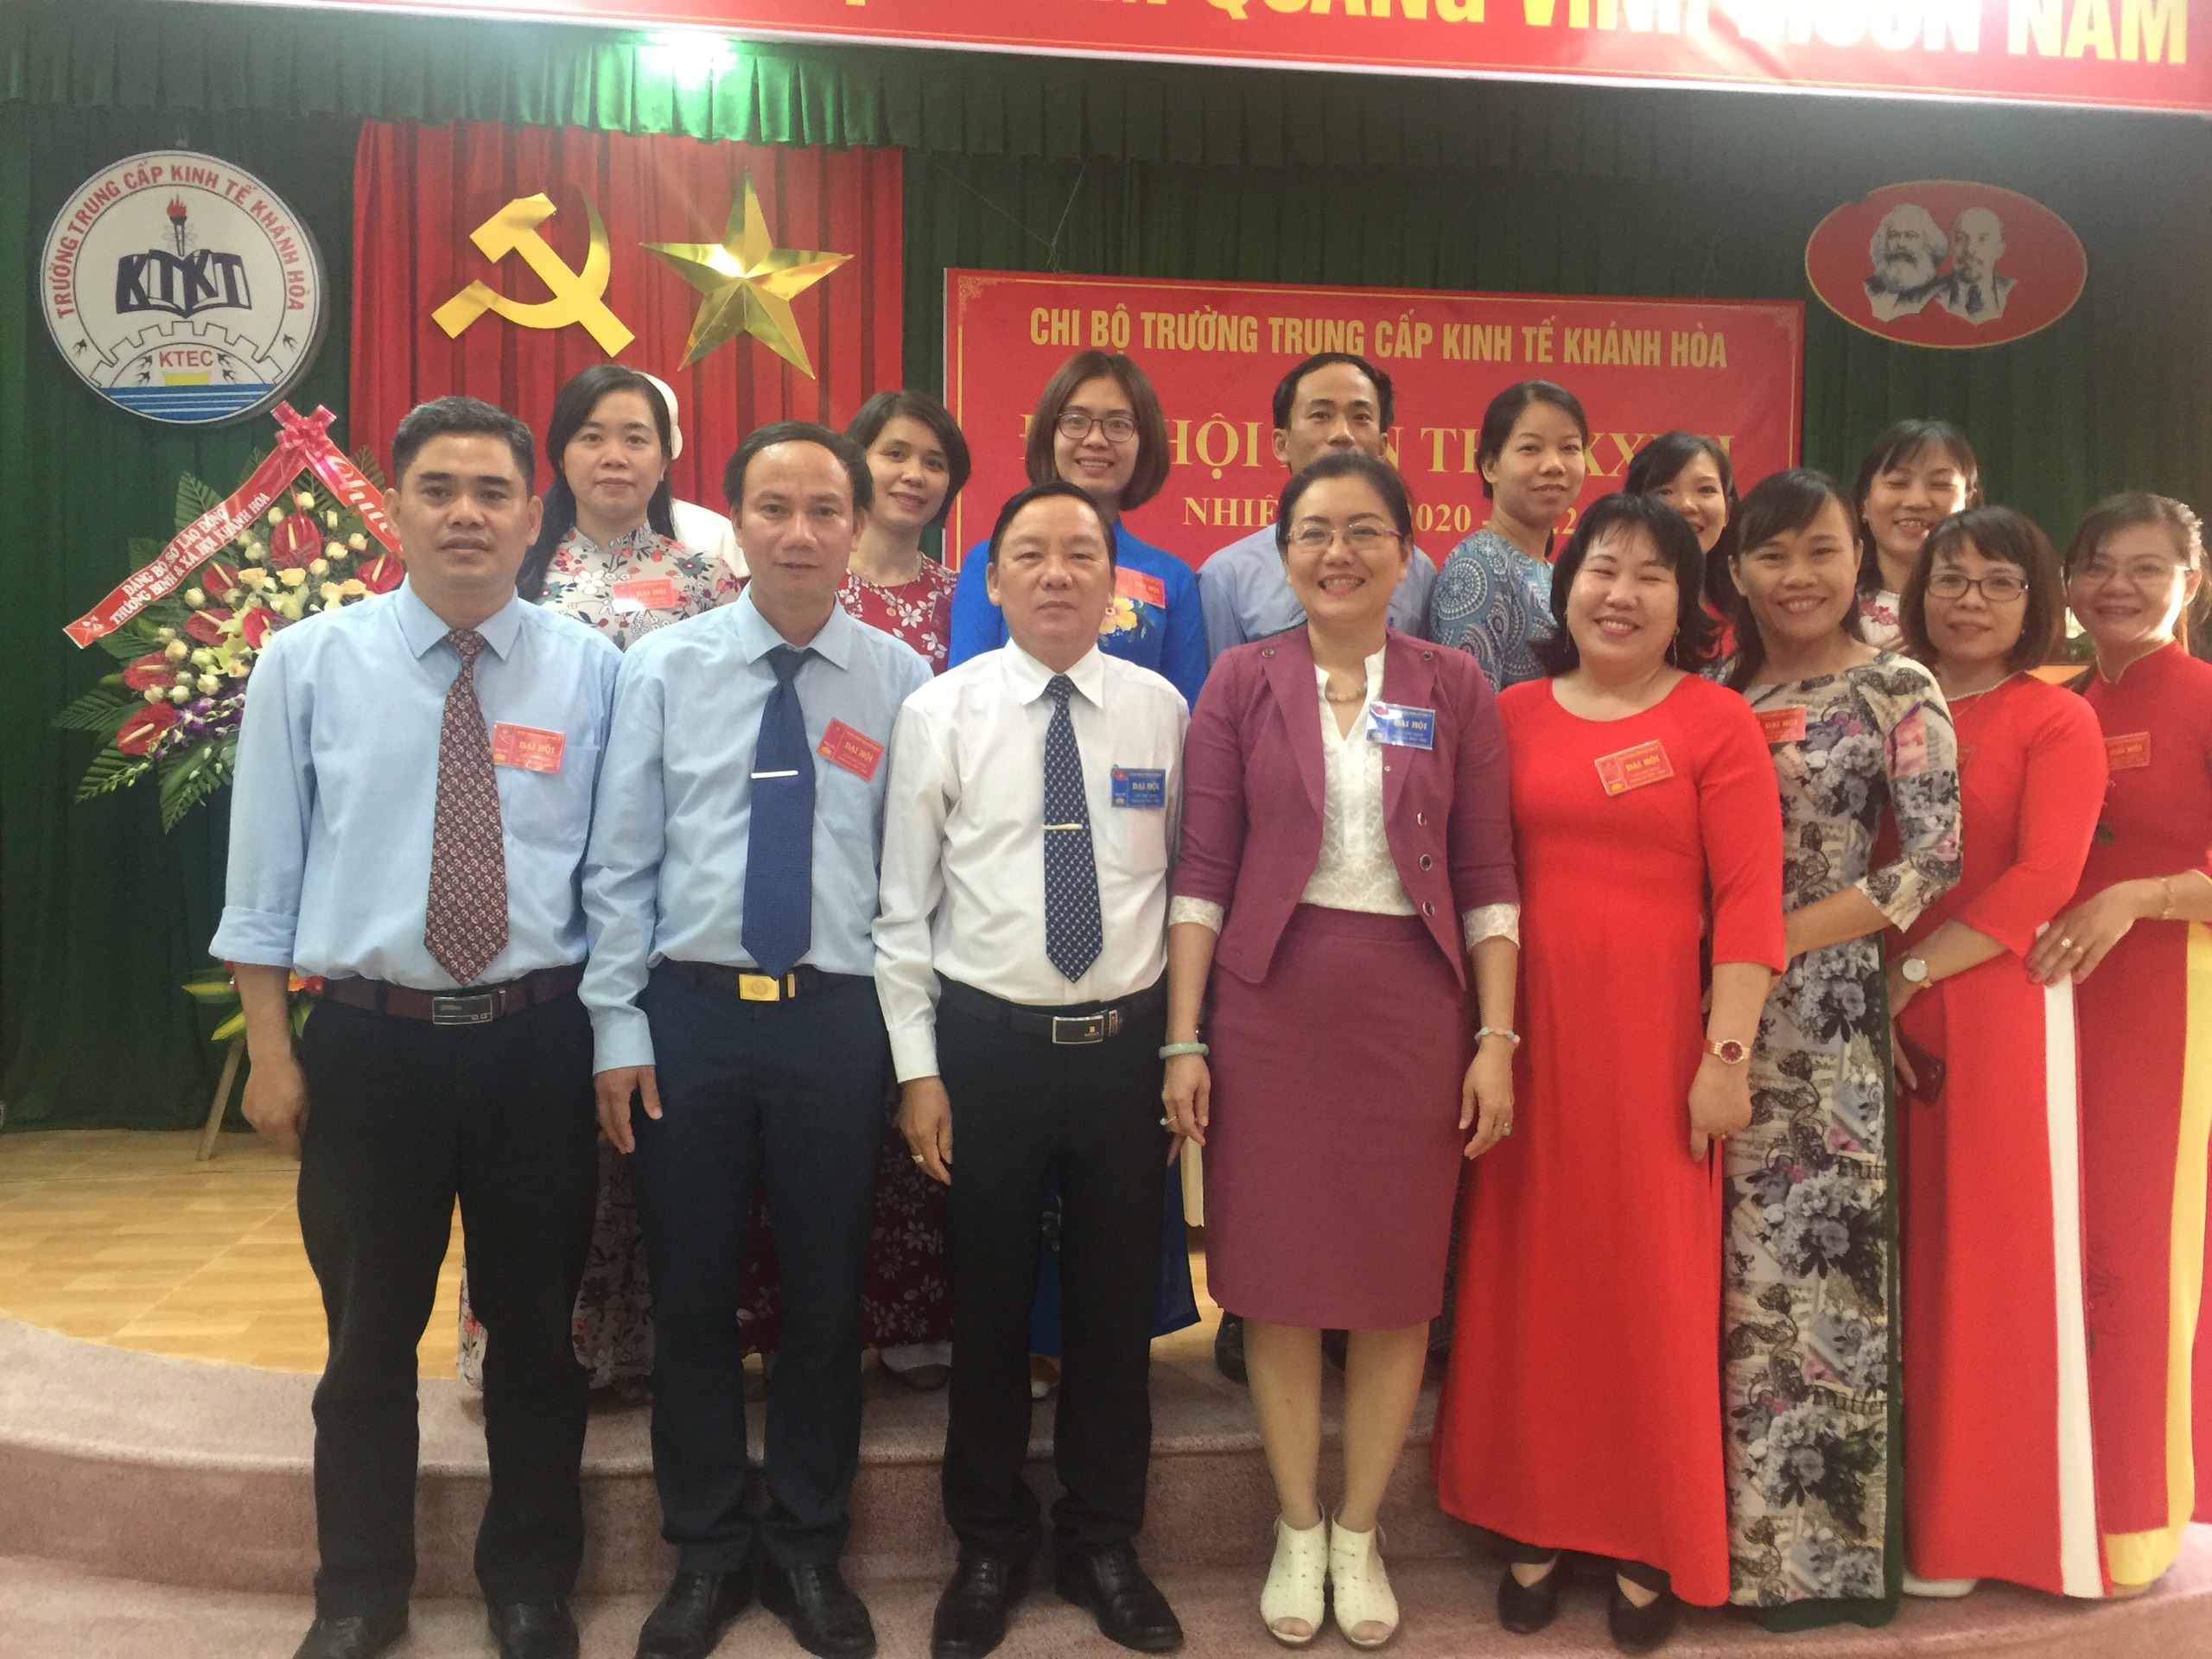 Chi bộ Trường Trung cấp Kinh tế Khánh Hòa tổ chức Đại hội lần thứ XXVII, nhiệm kỳ 2020 - 2022